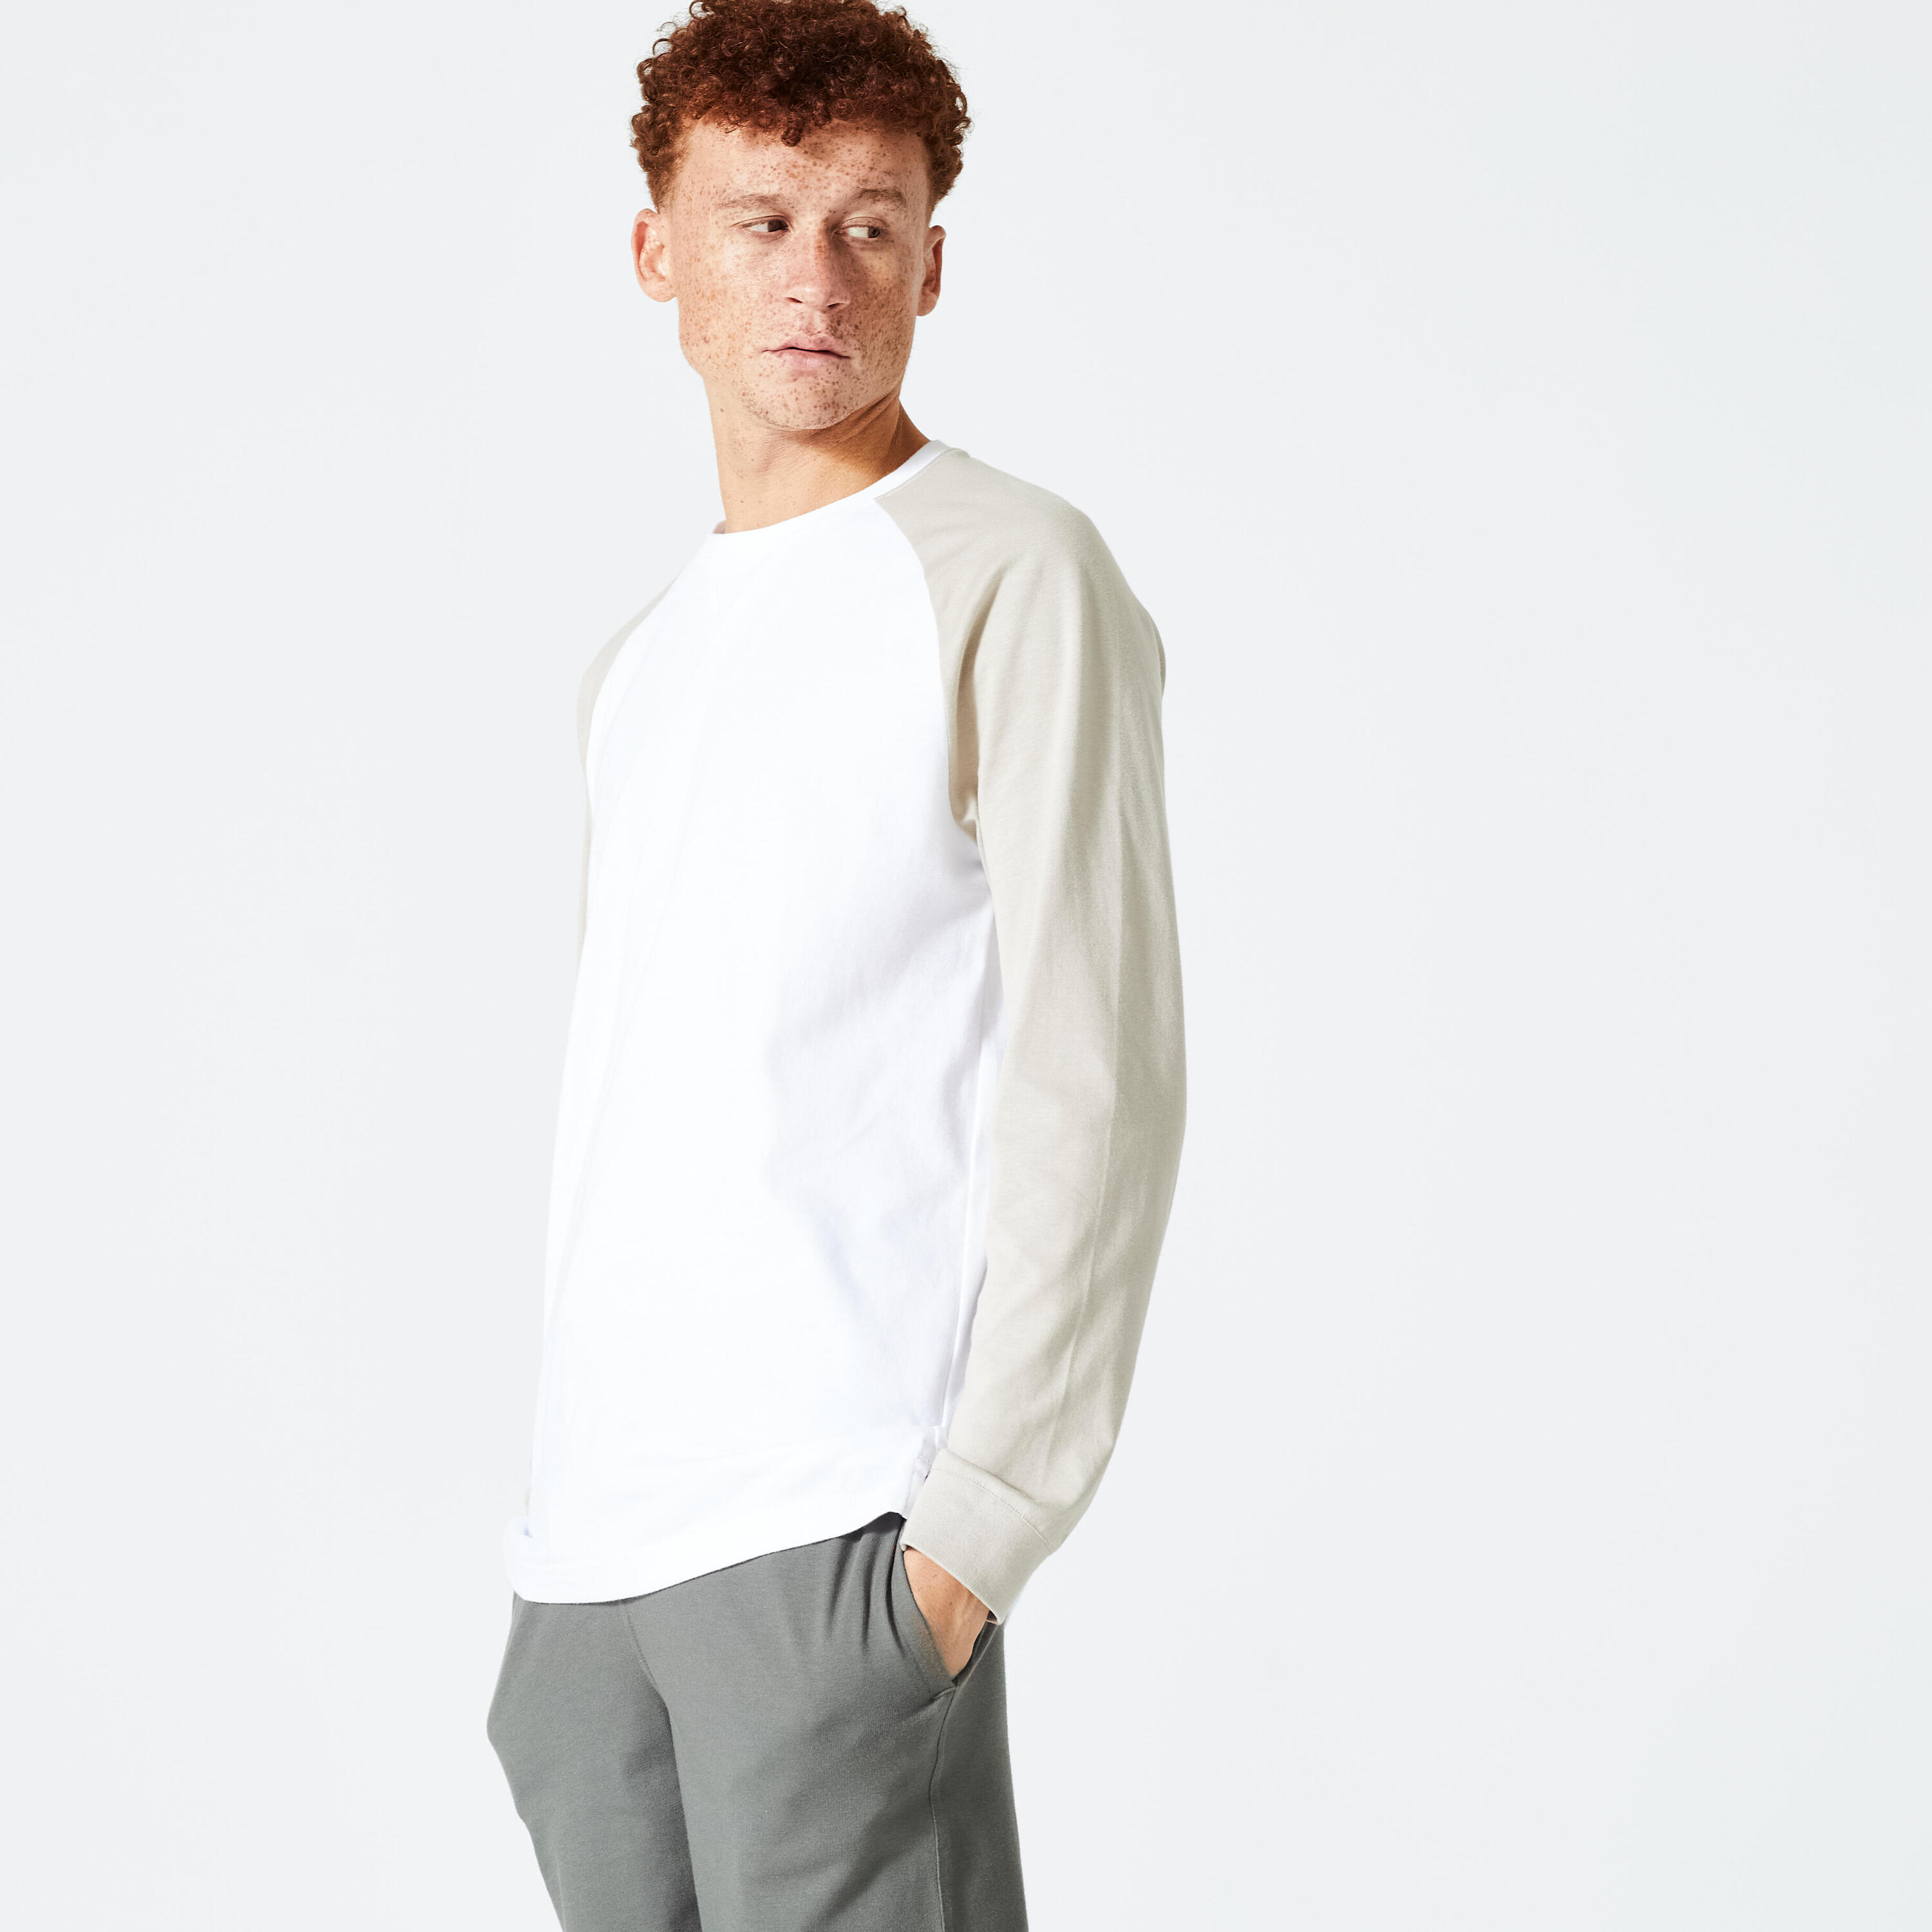 Men's Long-Sleeved Fitness T-Shirt 520 - White/Beige 1/5